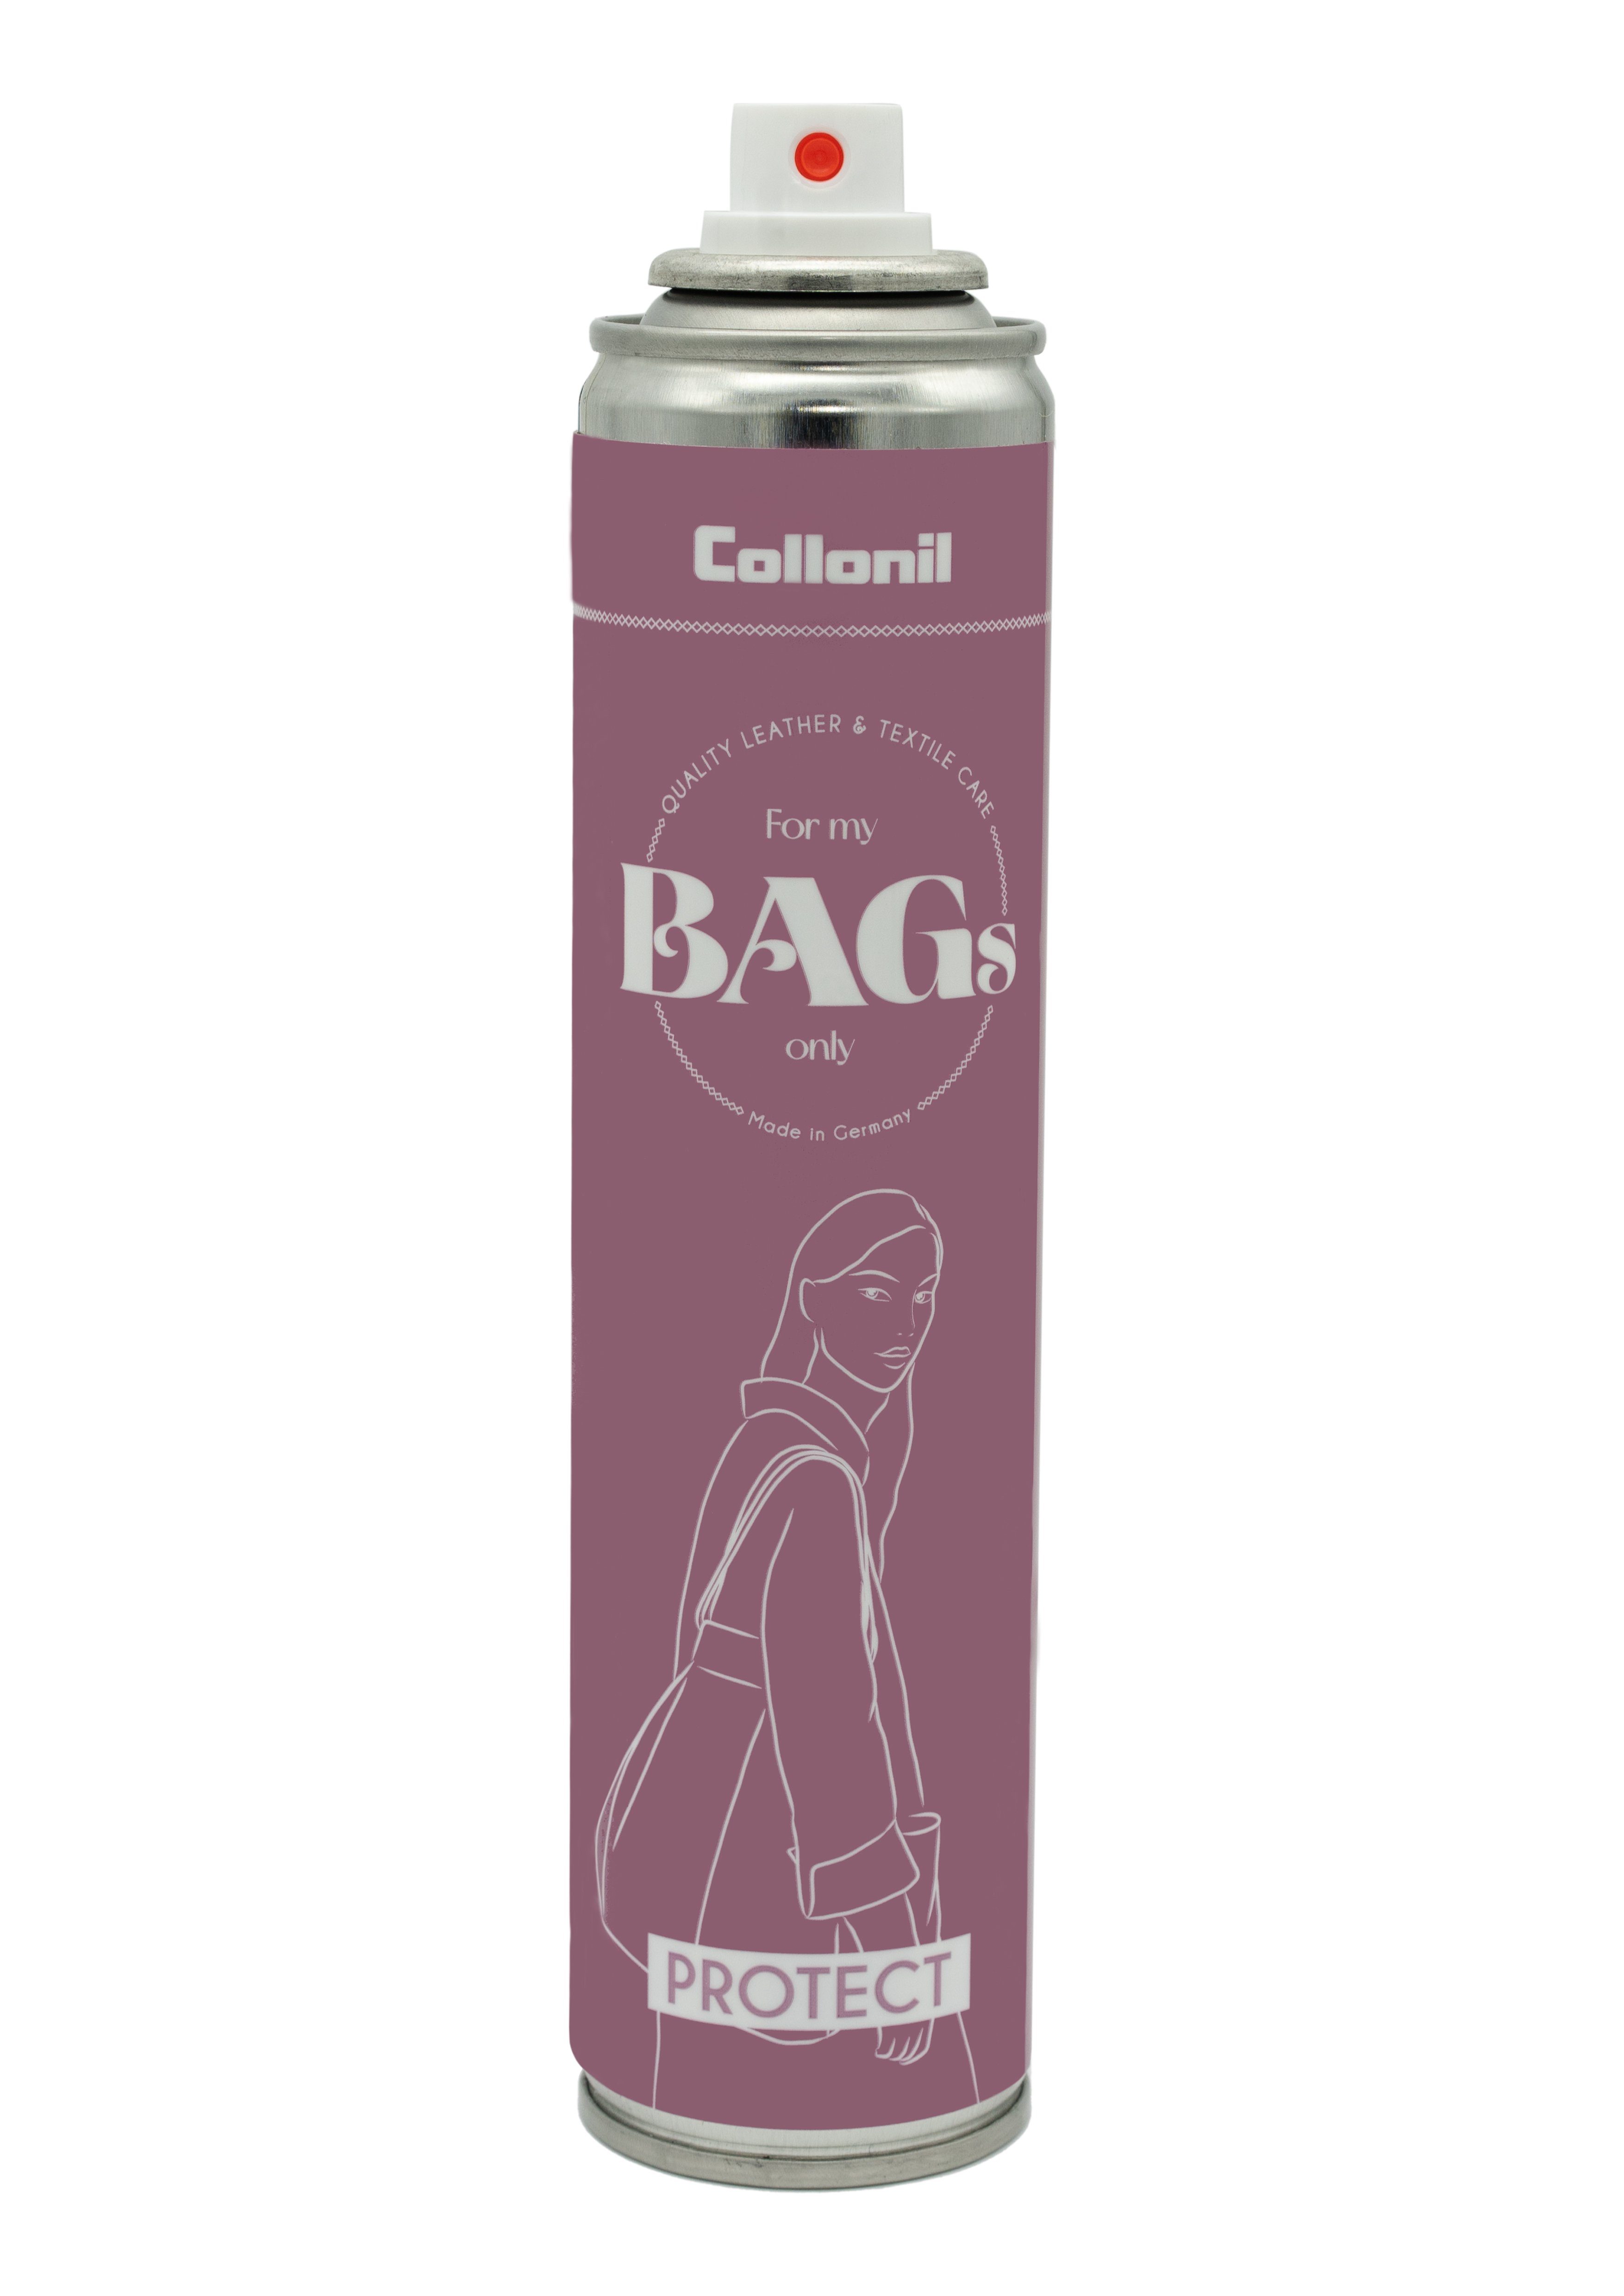 Collonil myBags Protect - Glattleder genarbtem Imprägnierspray und für feinem aus Handtaschen